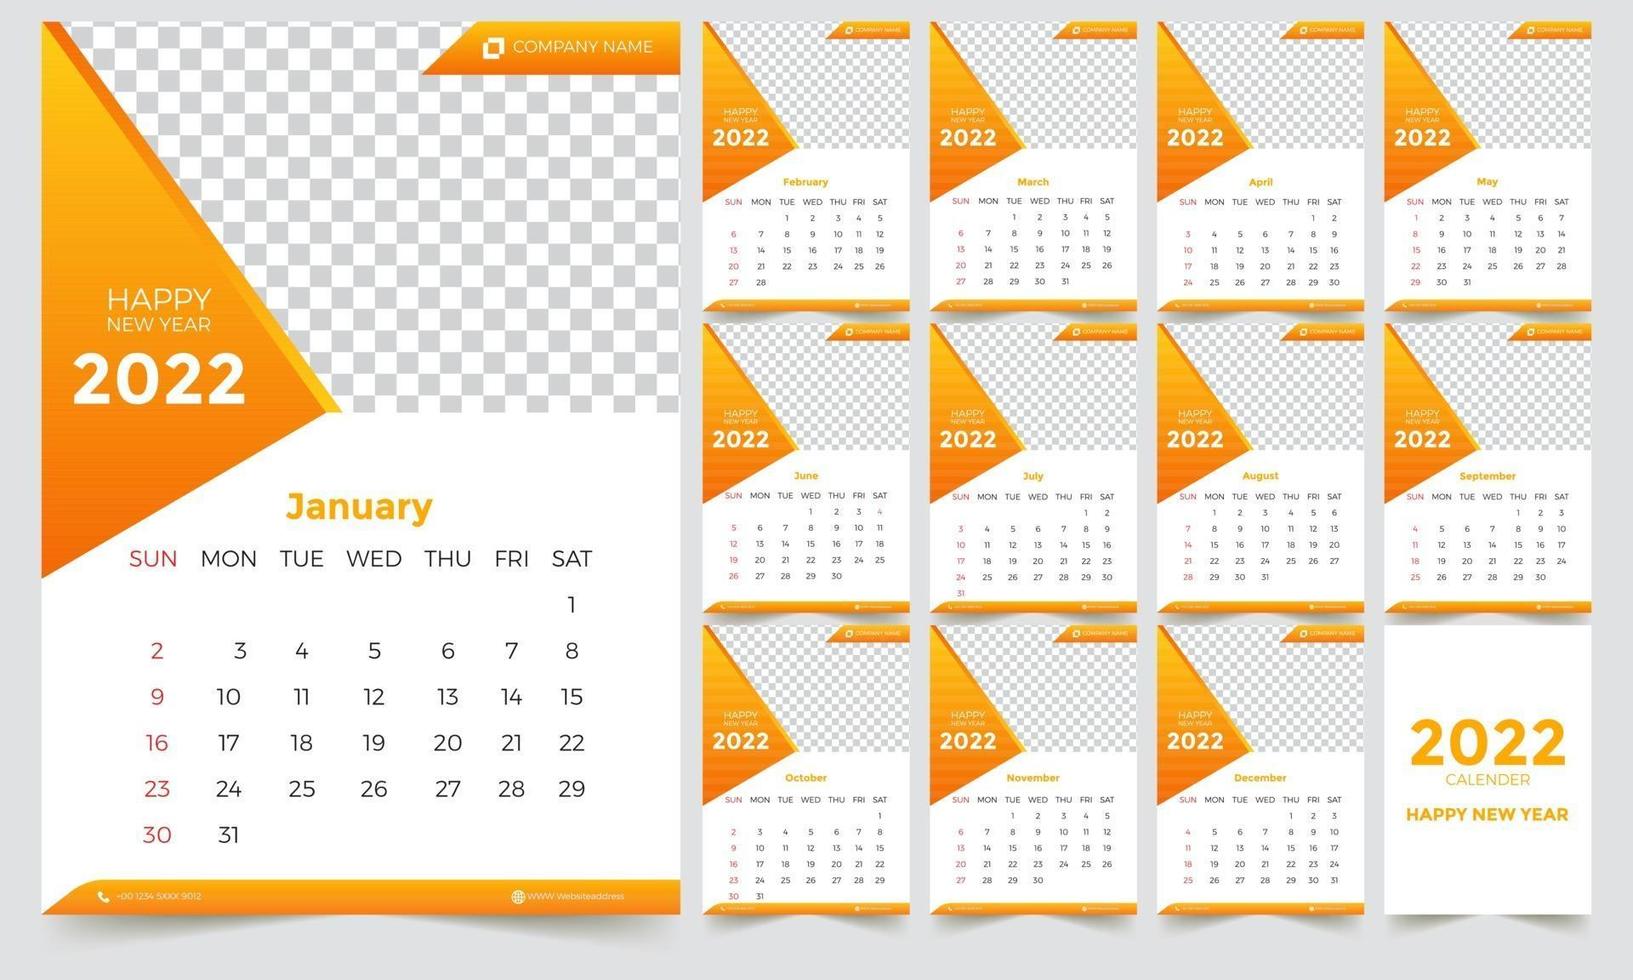 Wall Calendar 2022 vector